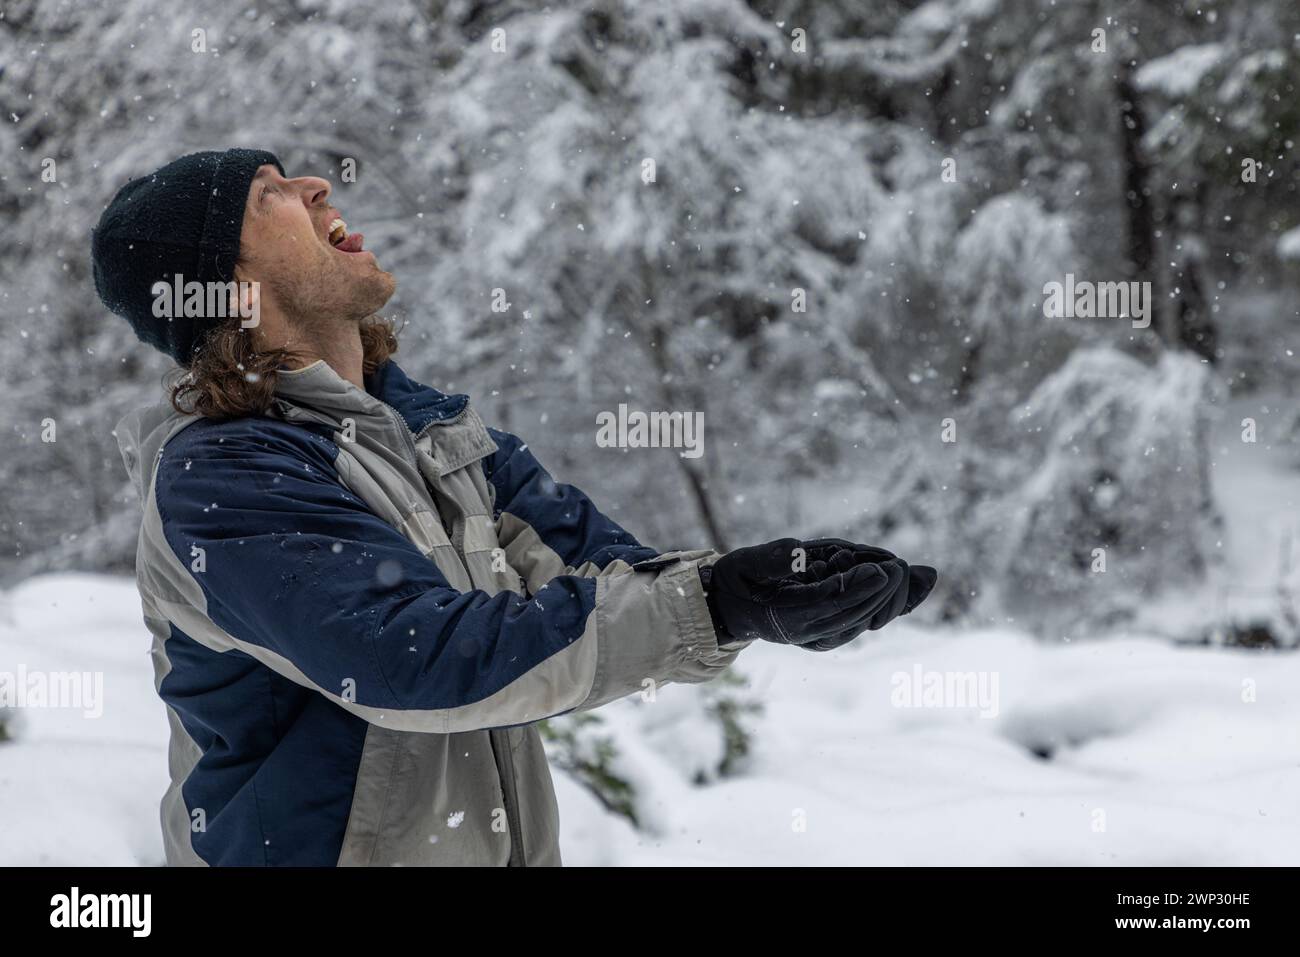 Ein Mann in einer blau-grauen Jacke wirft Schnee in die Luft. Er trägt einen schwarzen Hut und Handschuhe. Vorstellung von Freude und Verspieltheit, wie der Mann es genießt Stockfoto